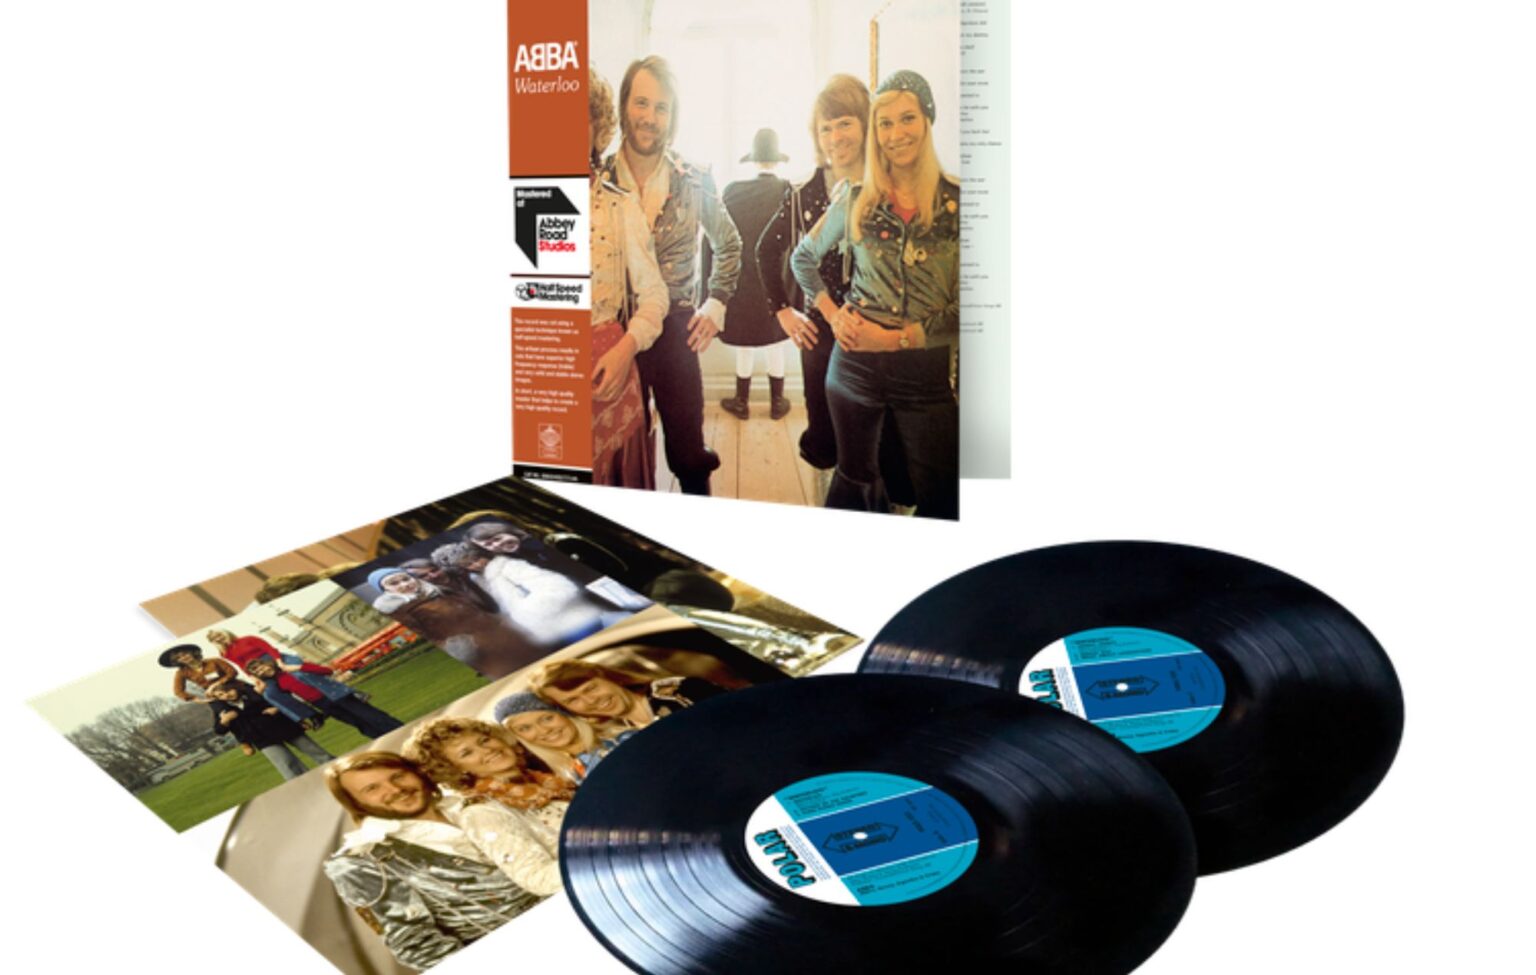 ABBA anuncia reedição comemorativa de 50 anos de “Waterloo”